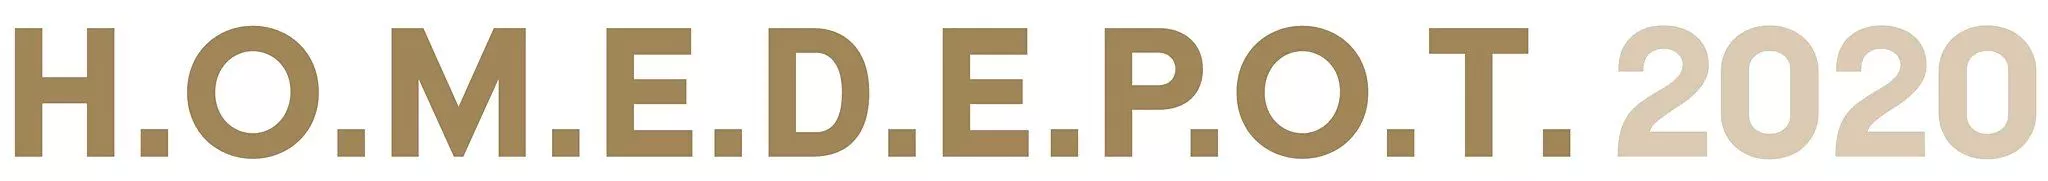 H.O.M.E.D.E.P.O.T. 2020 Logo